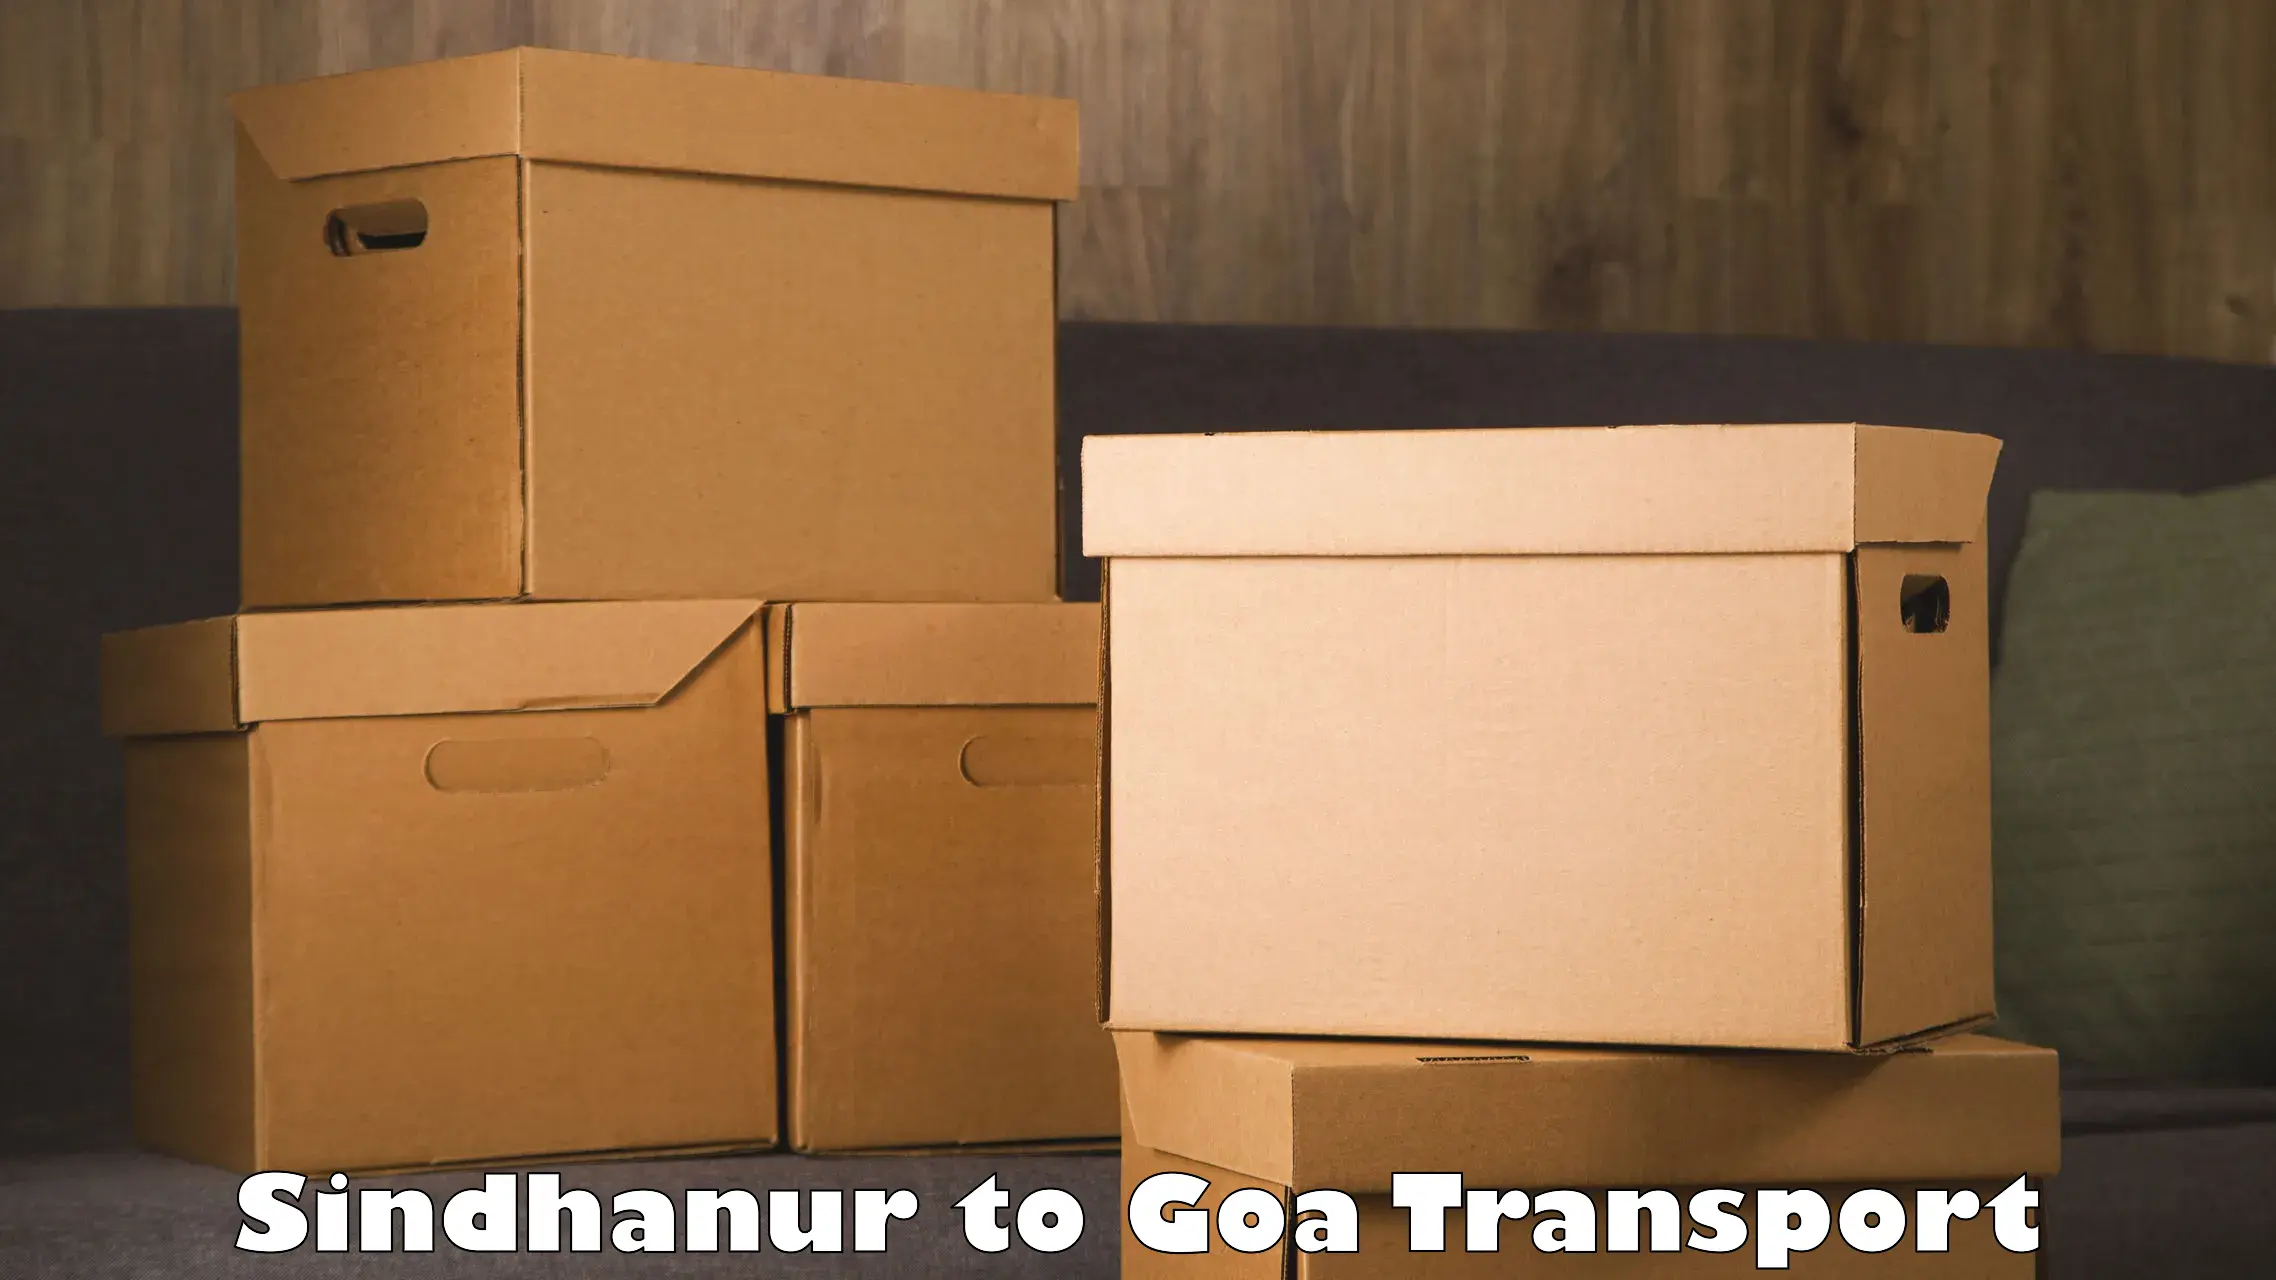 Transport in sharing Sindhanur to NIT Goa